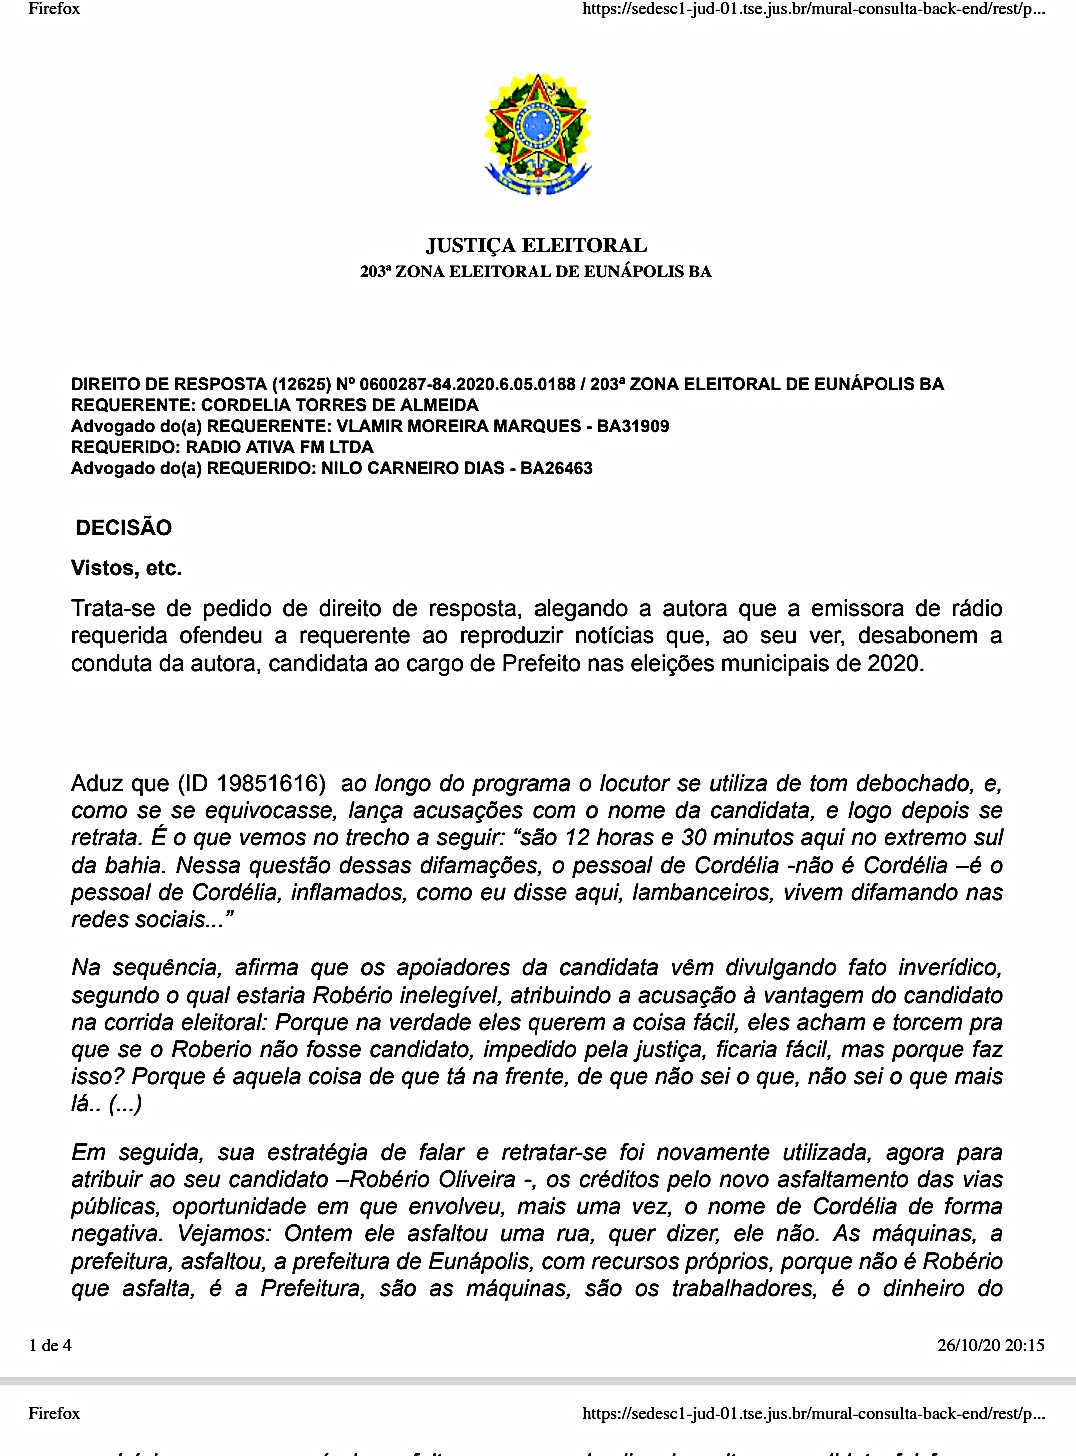 Justiça concede direito de resposta a Cordélia (DEM) no programa J. Bastos Repórter 6